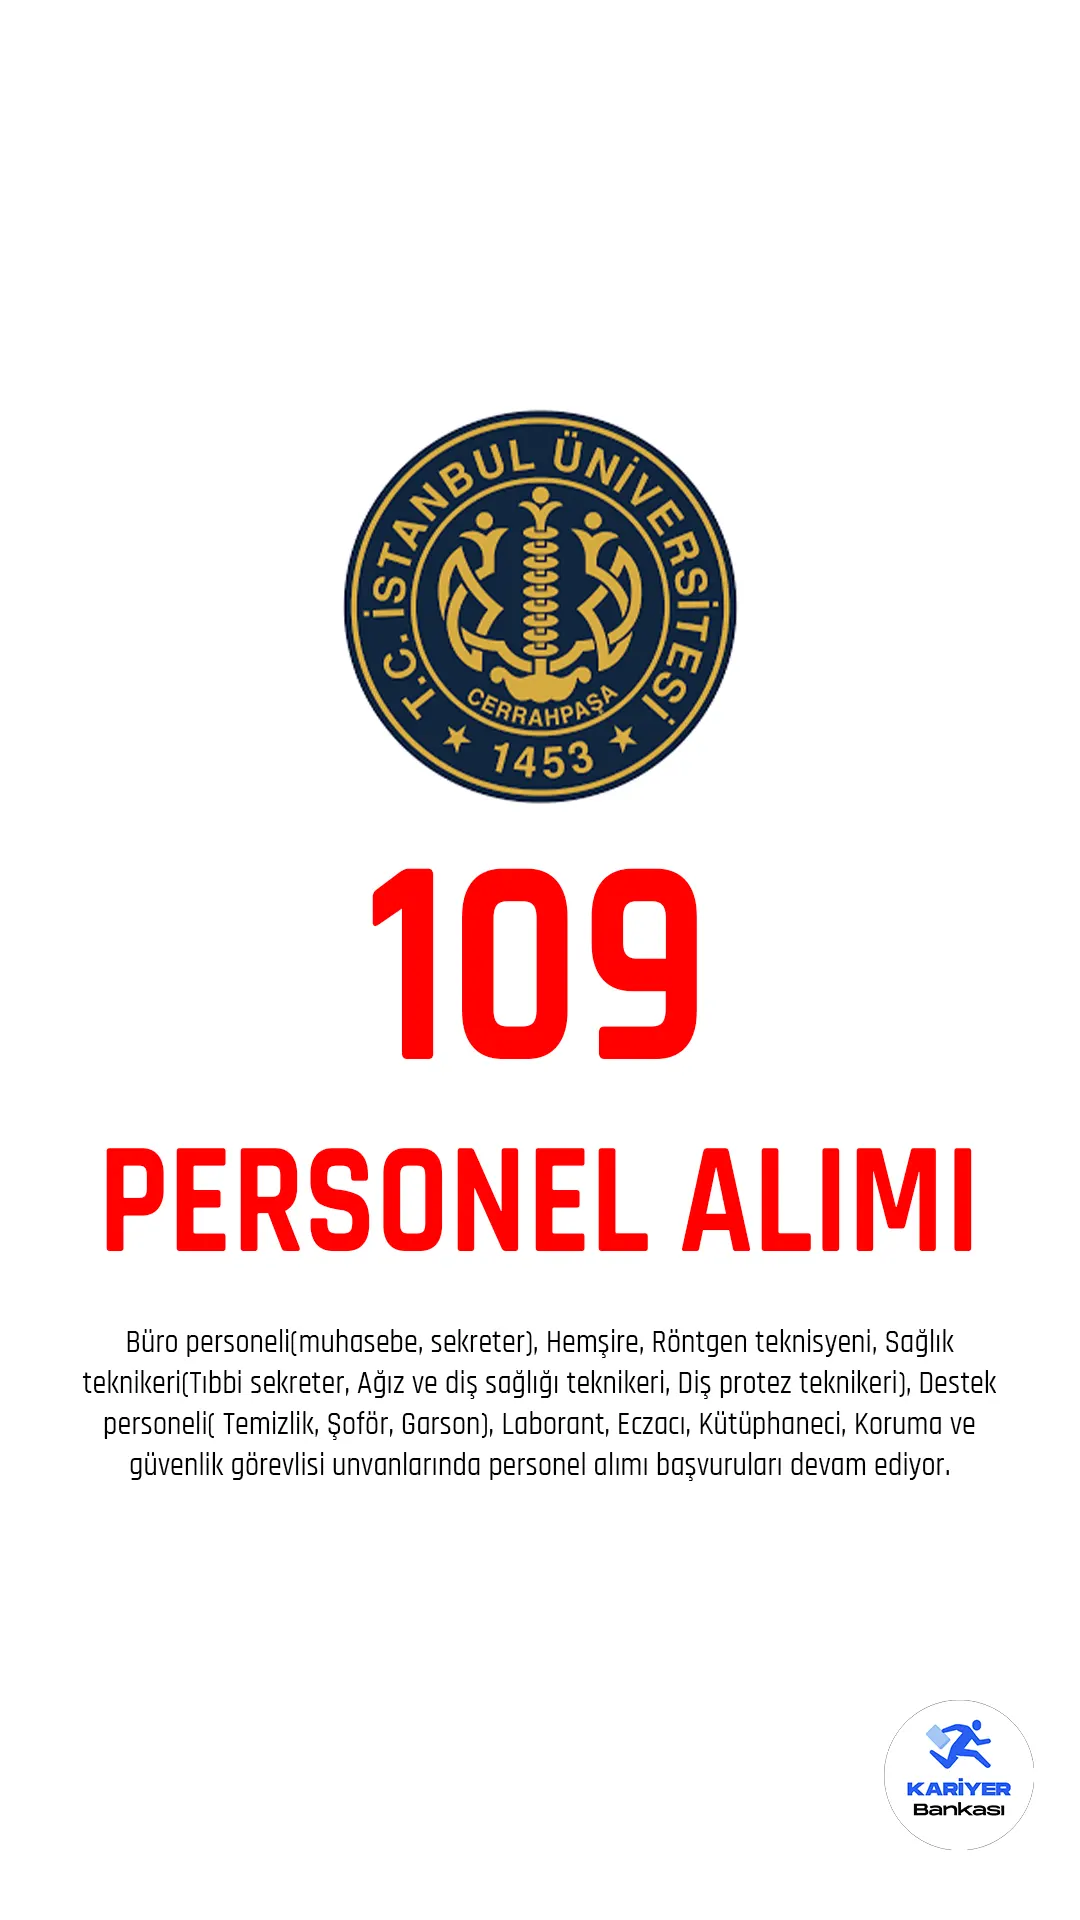 İstanbul Üniversitesi Cerrahpaşa Rektörlüğü, bazı birimlerinde istihdam edilmek üzere 657 sayılı Devlet Memurları Kanunu'nun 4. maddesi kapsamında 109 personel alımı yapacağını duyurdu.